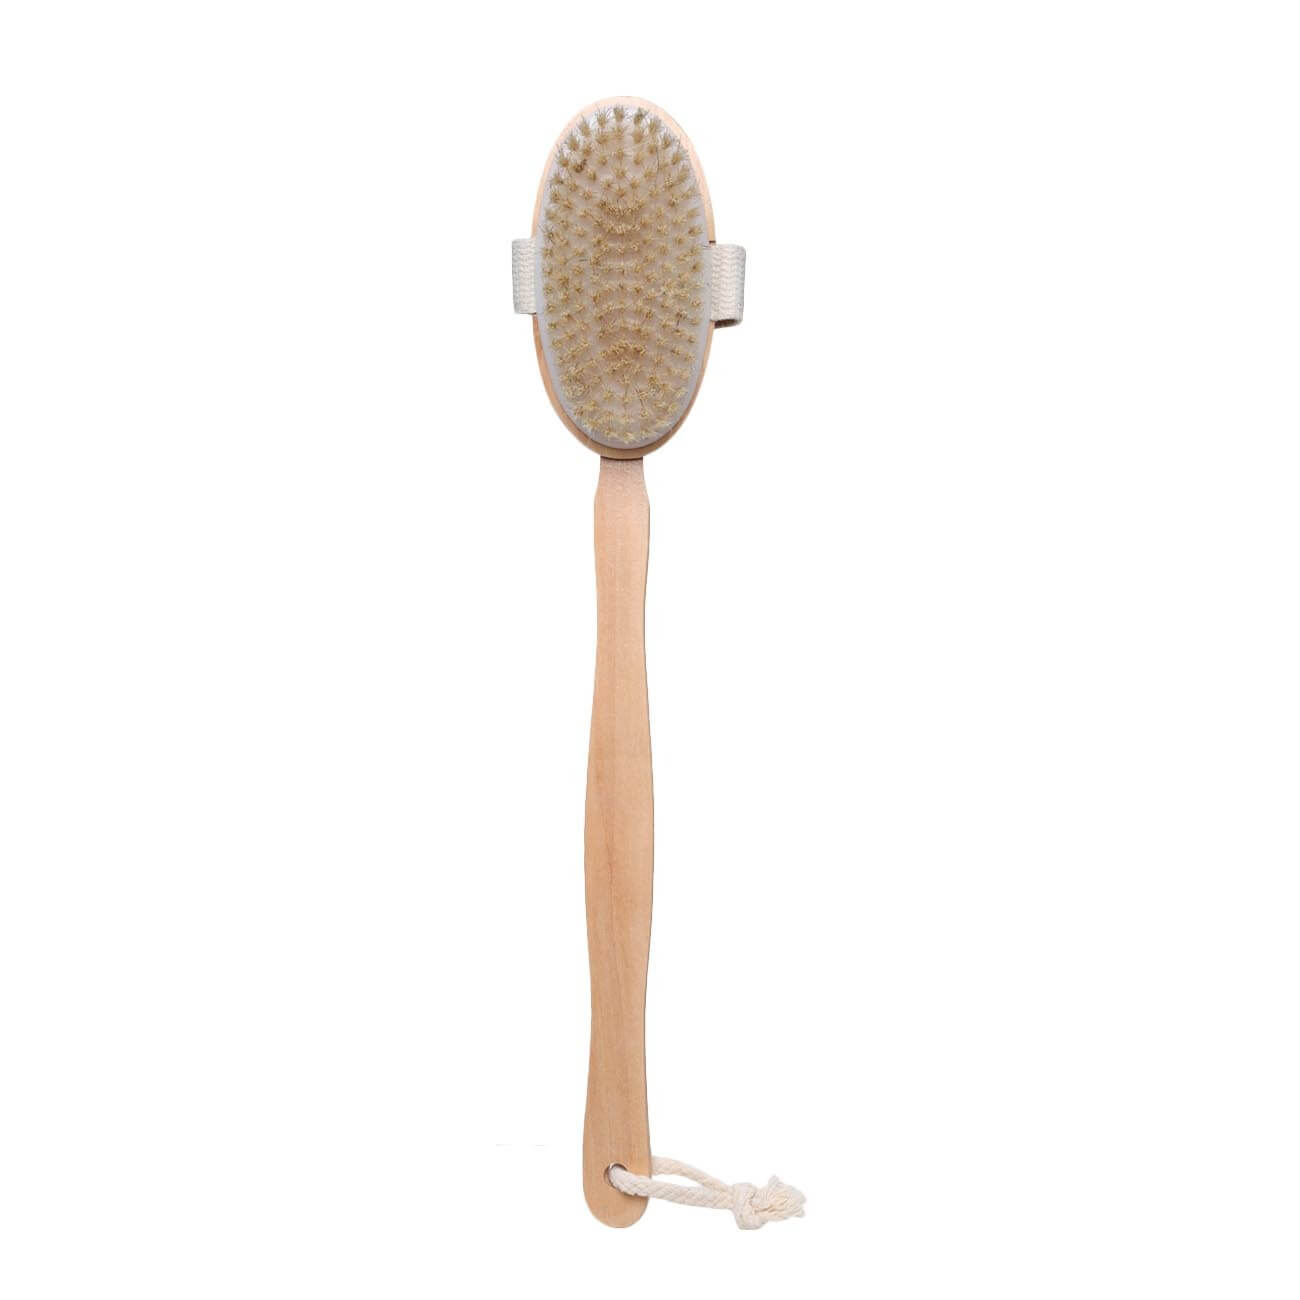 Щетка для сухого массажа, 40 см, с держателем, дерево/нейлон, Bamboo spa щетка для сухого массажа lei натуральная щетина